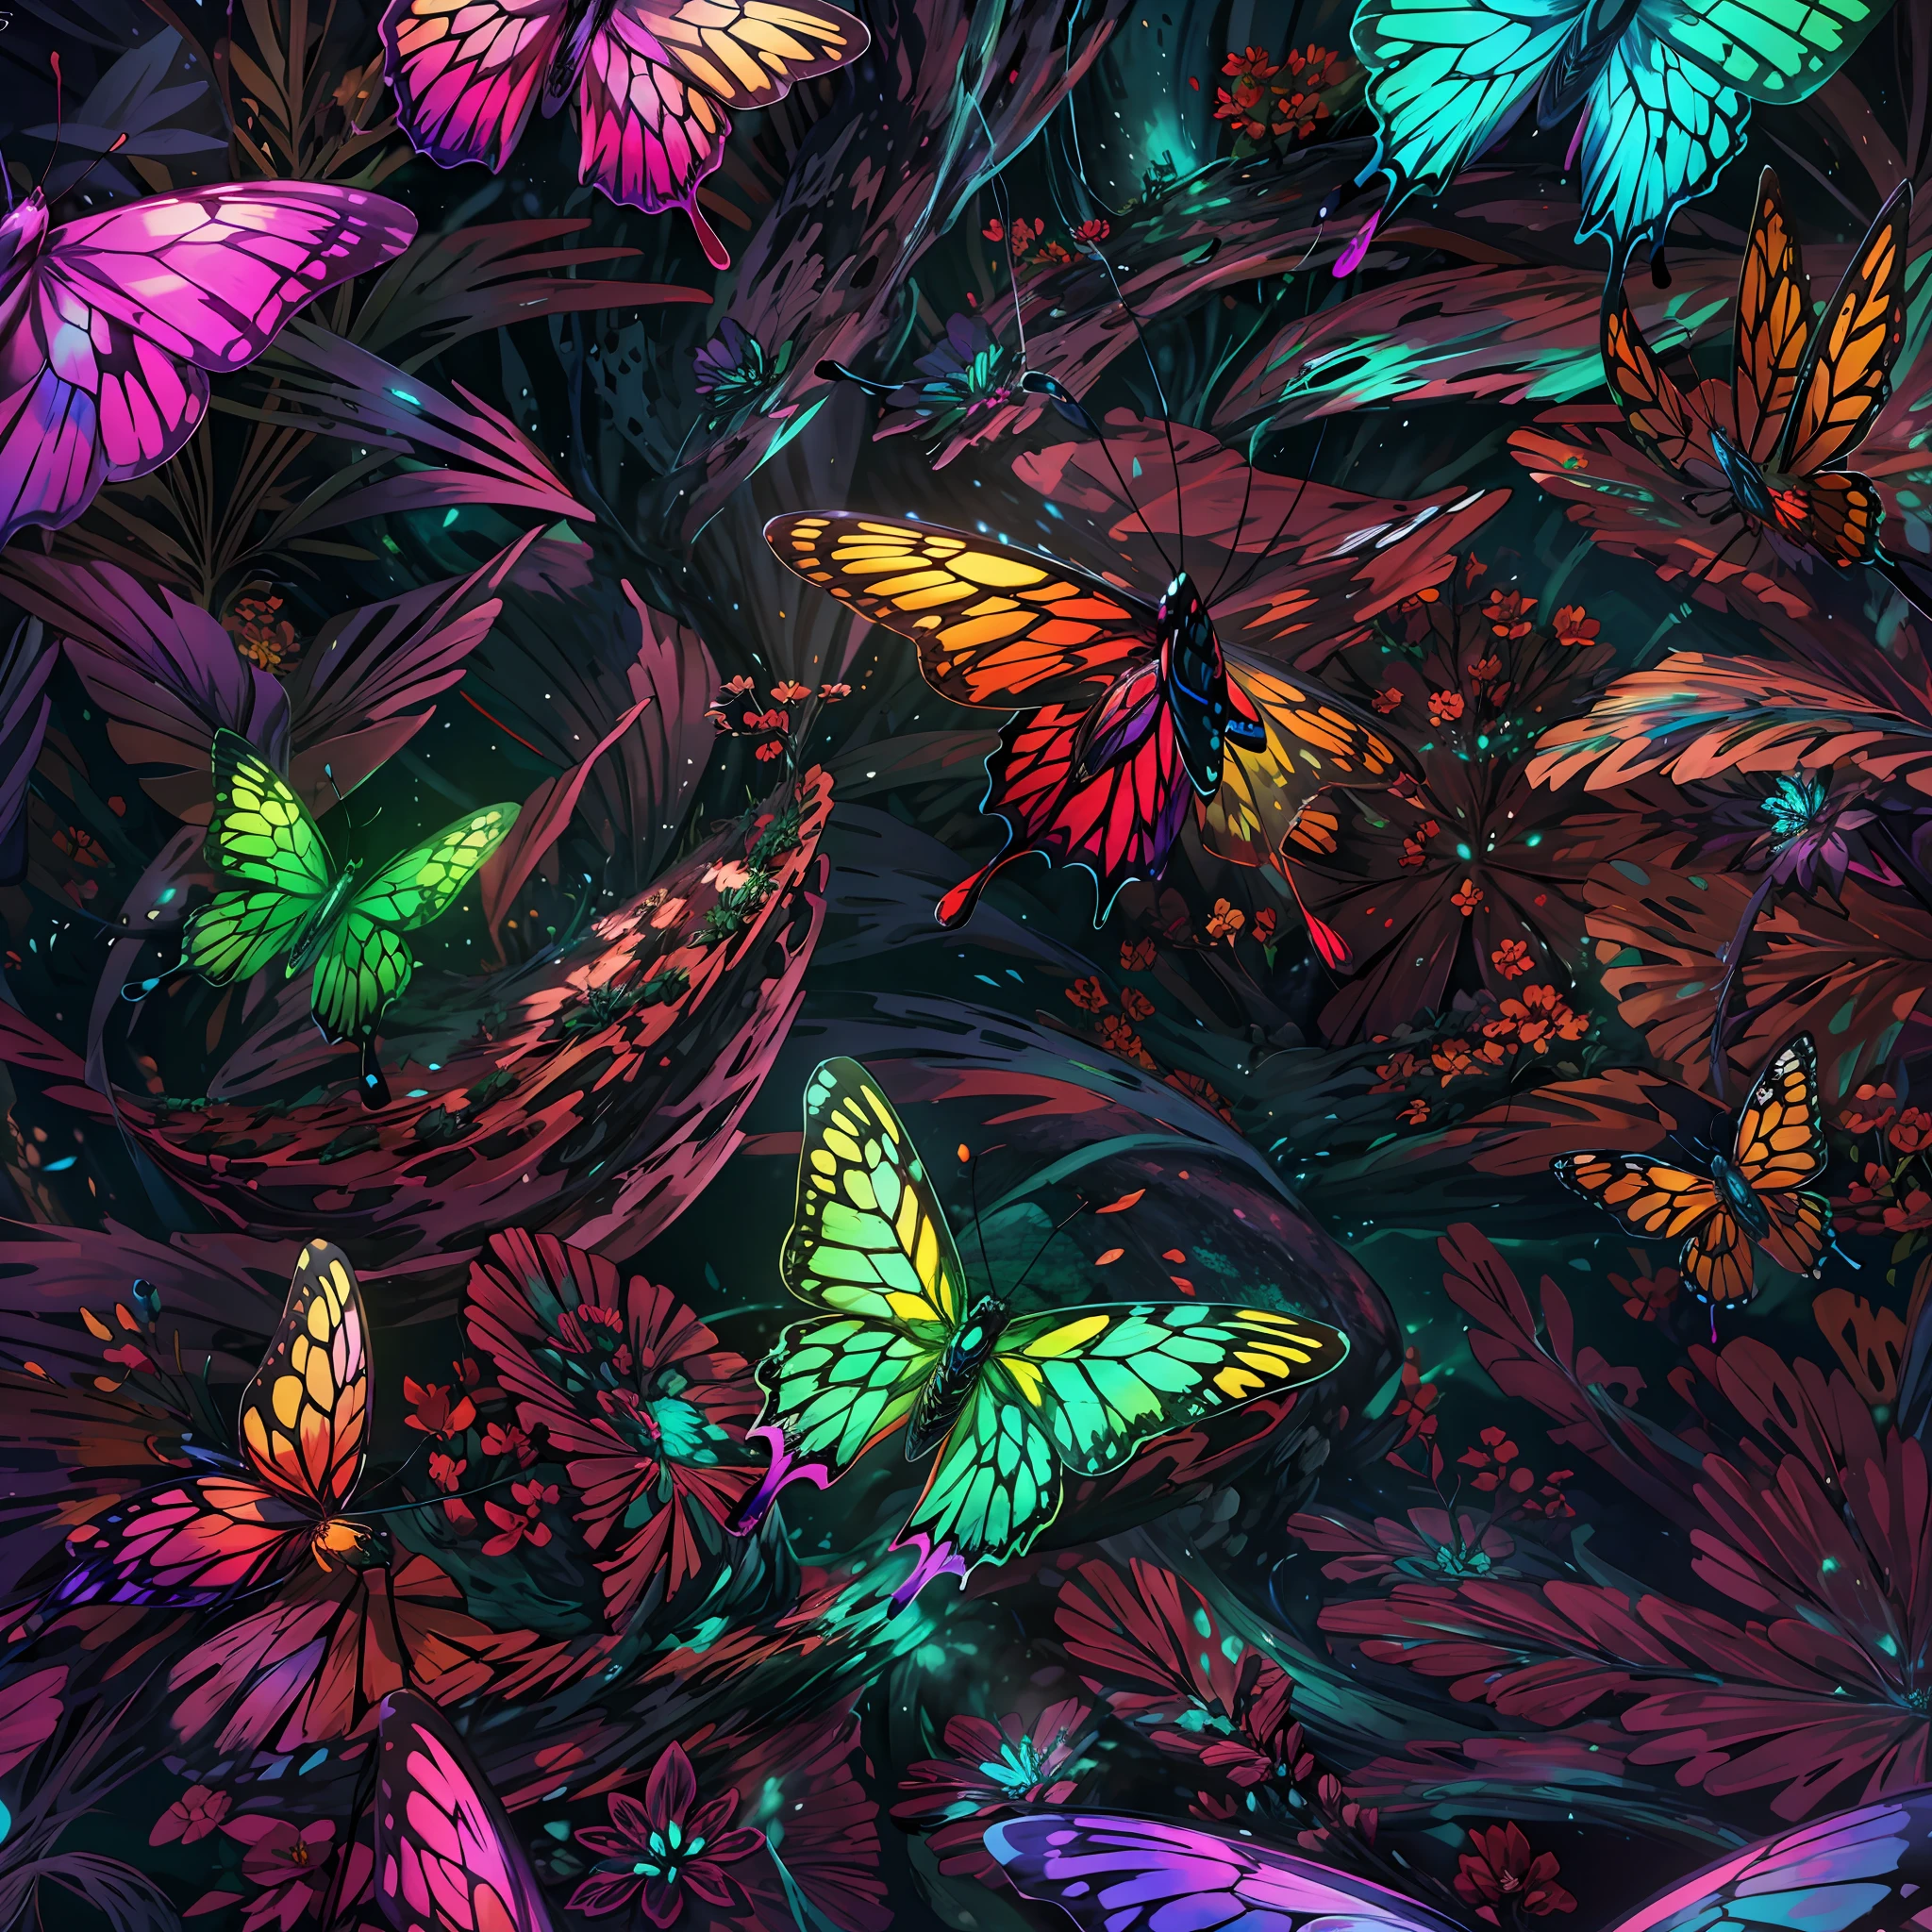 close shot  of a цветful butterfly, большие крылья, подробный, подробный wings, бабочка летает на большом листе в чужом лесу , Светящиеся крылья, кристалл, как ,Фокус, Инопланетный пейзажный фон .ПЕРЕРЫВ,подробный,реалистичный,4k highly подробный digital art,Октановый рендер, биолюминесцентный, ПЕРЕРЫВ 8K resolution concept art, Реализм,от Mappa Studios,шедевр,Лучшее качество,официальное искусство,Иллюстрация,четкая линия,(прохладный_цвет),идеальная композиция,абсурд, Фантазия,Фокусed,Правило третей,